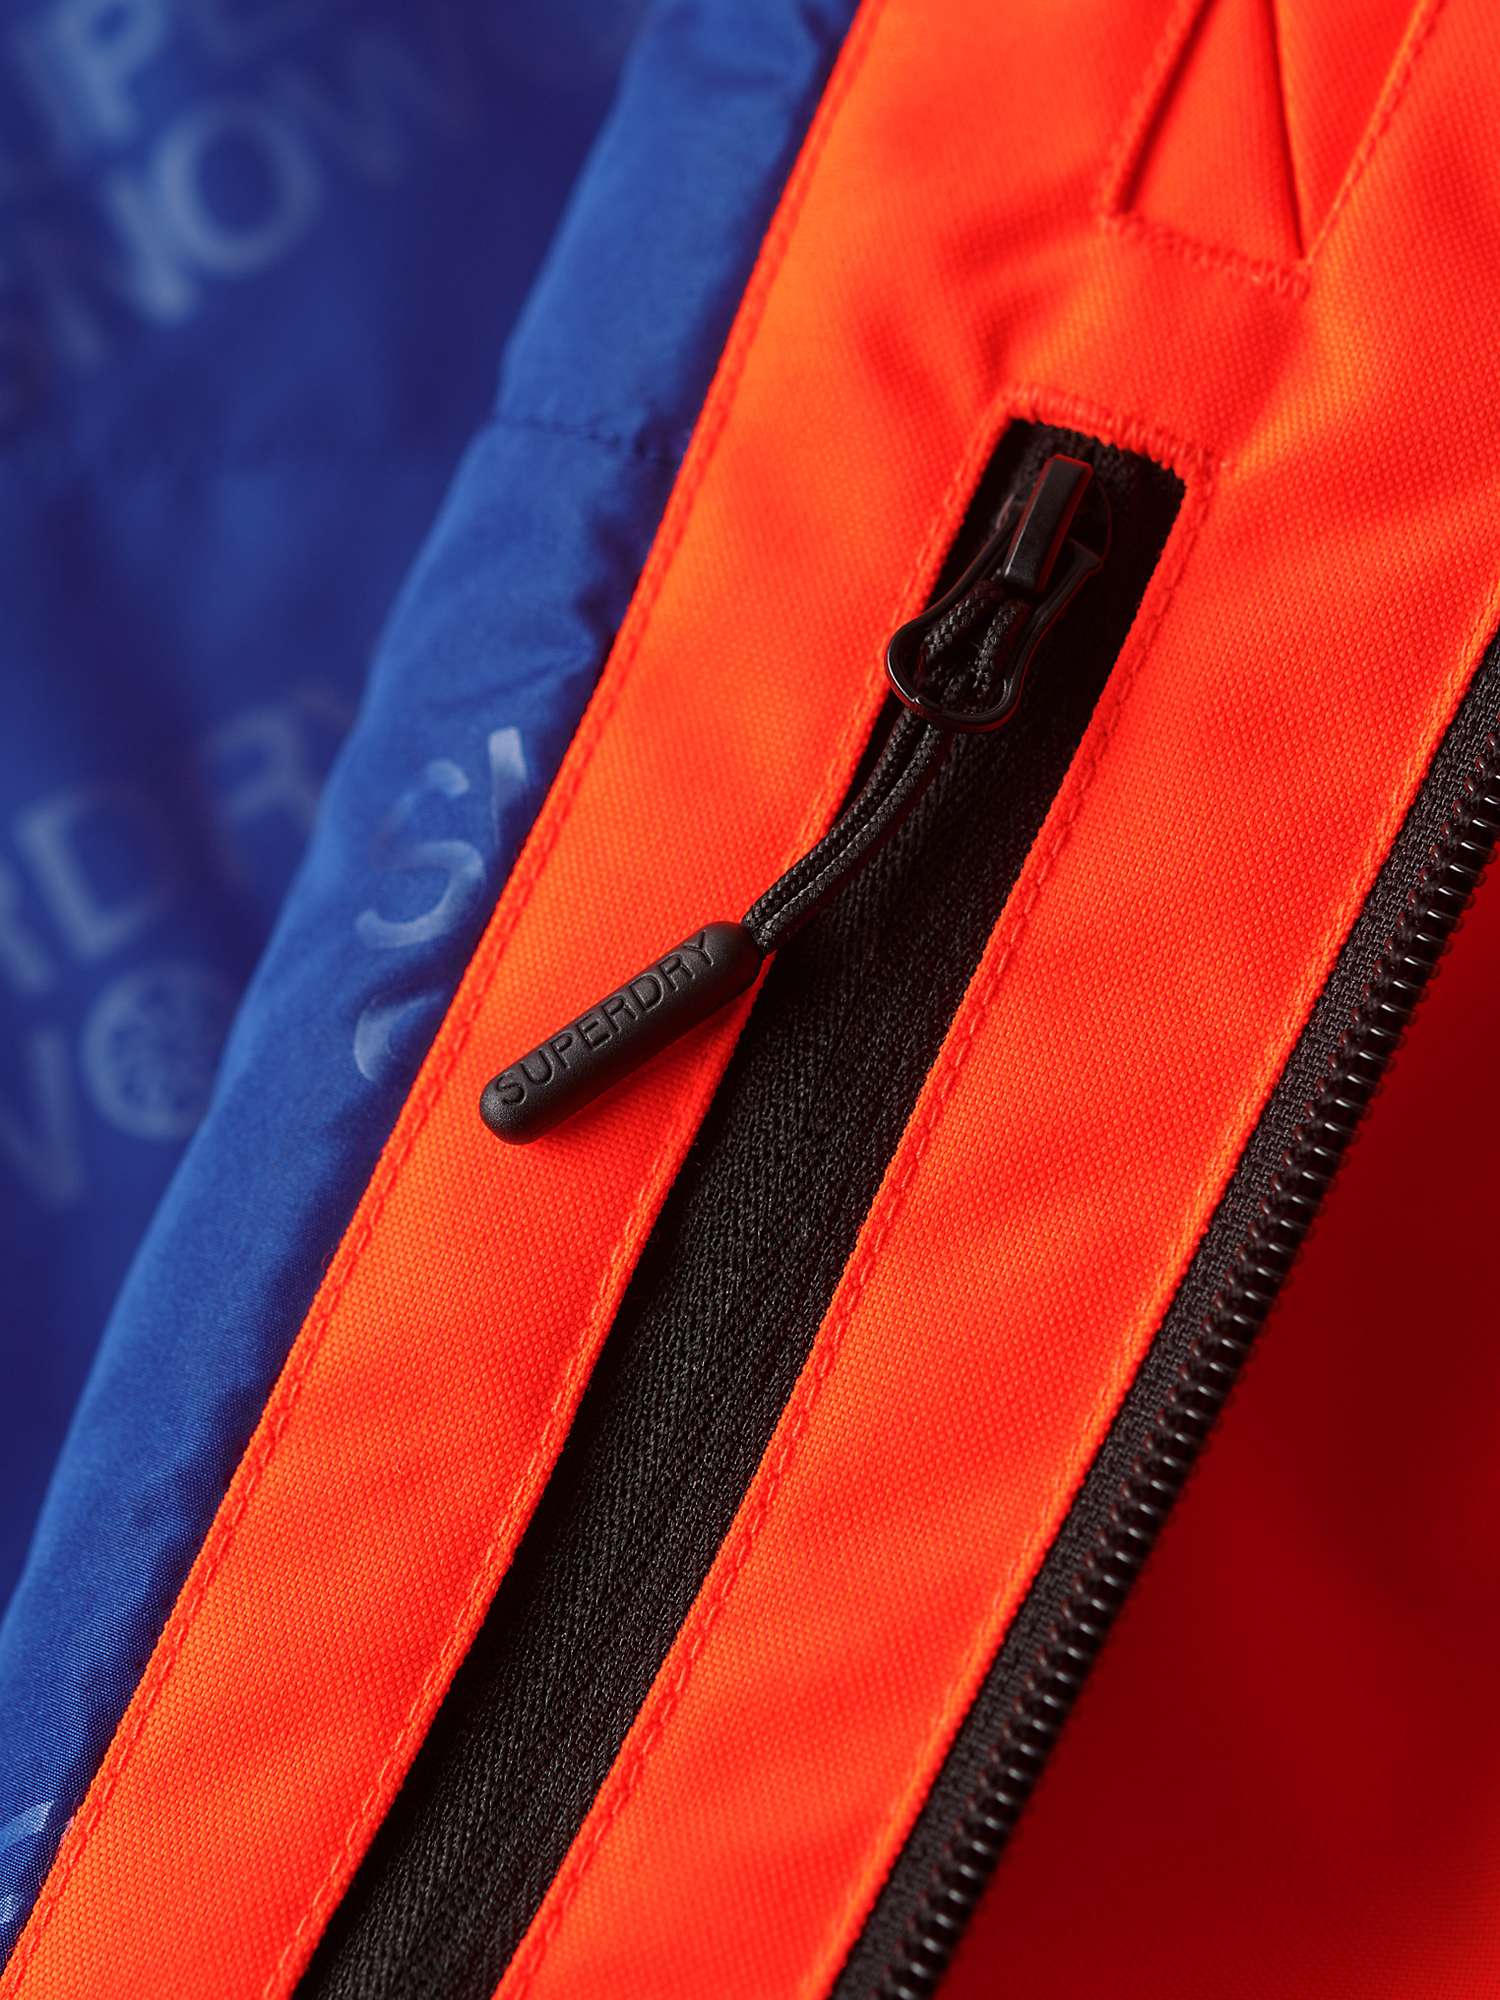 Buy Superdry Ski Ultimate Rescue Jacket Online at johnlewis.com